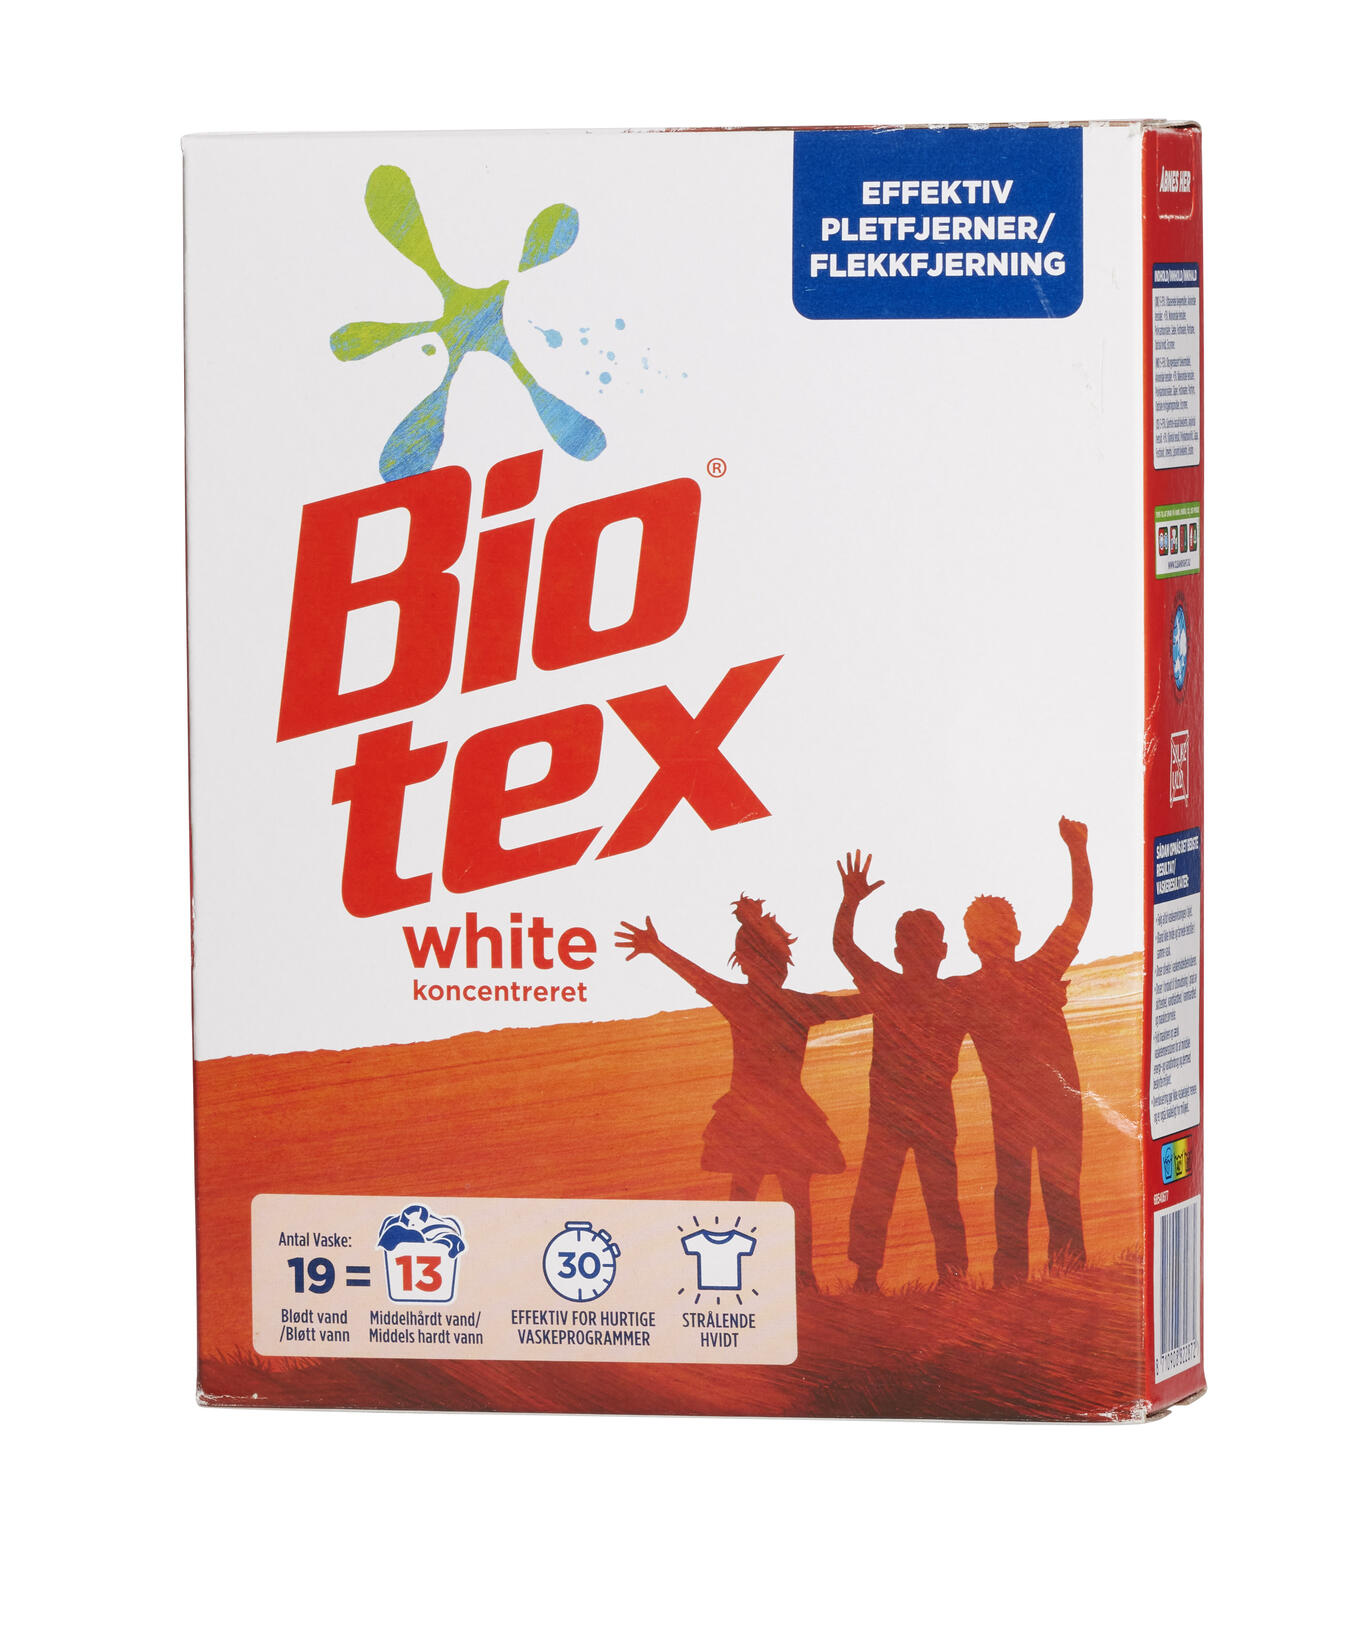 White vaskepulver Biotex